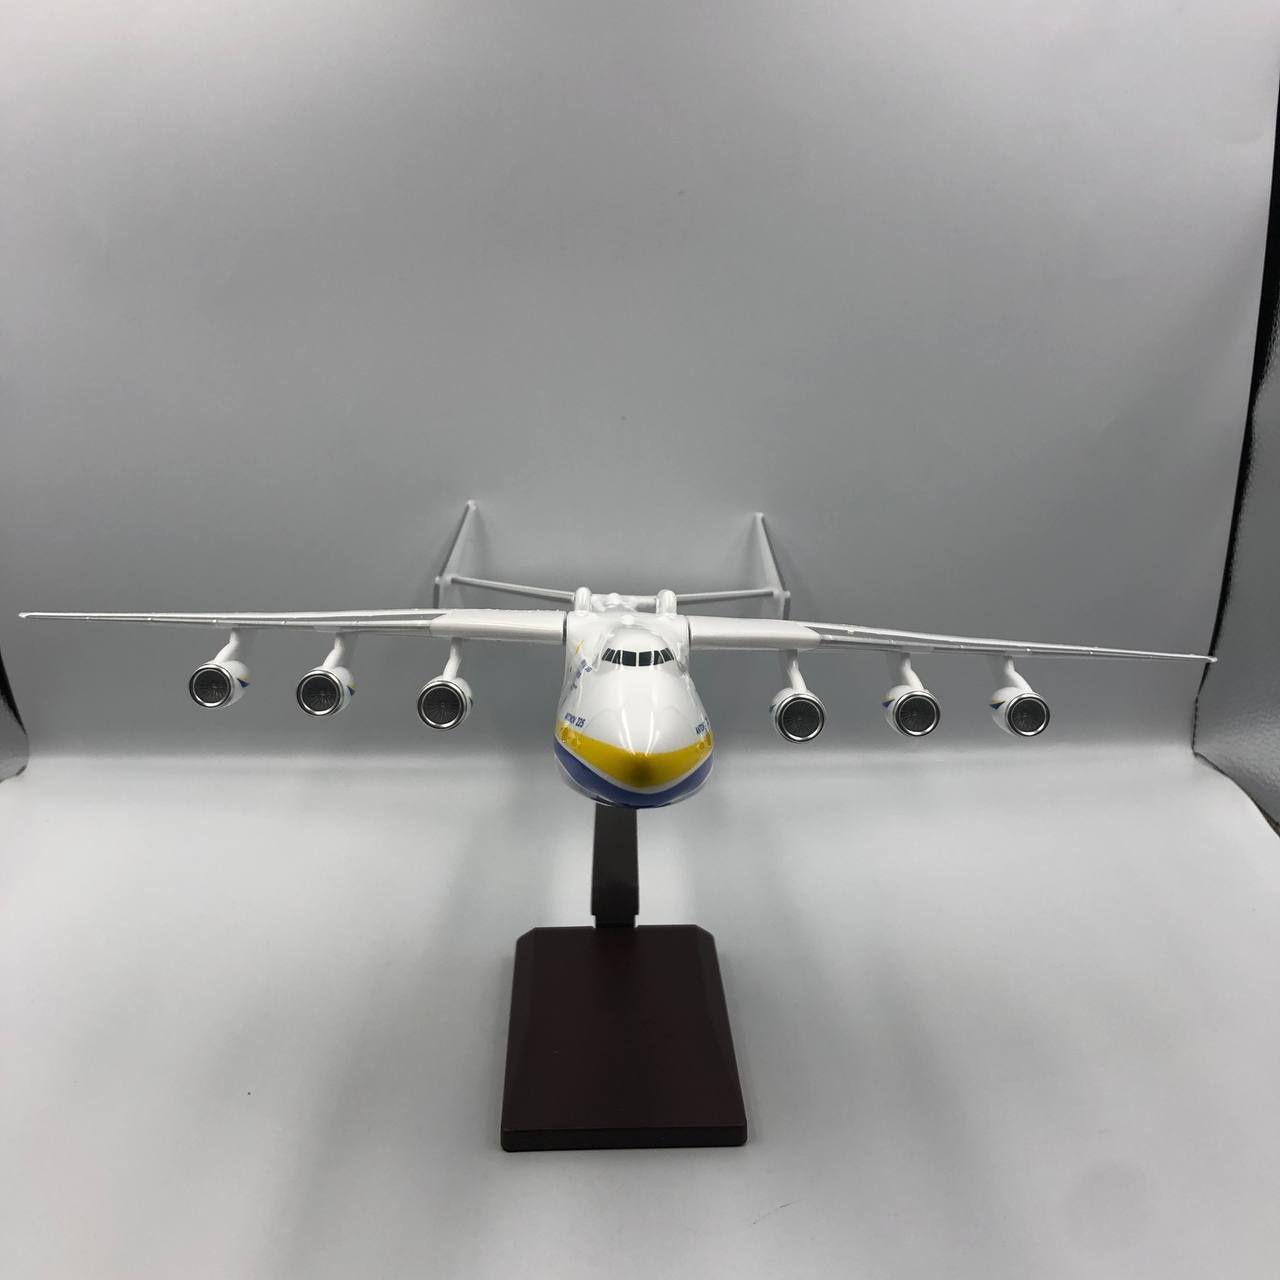 Люксова модель літака Ан-225 Мрія масштаб 1:200 ,(42 см) . лита